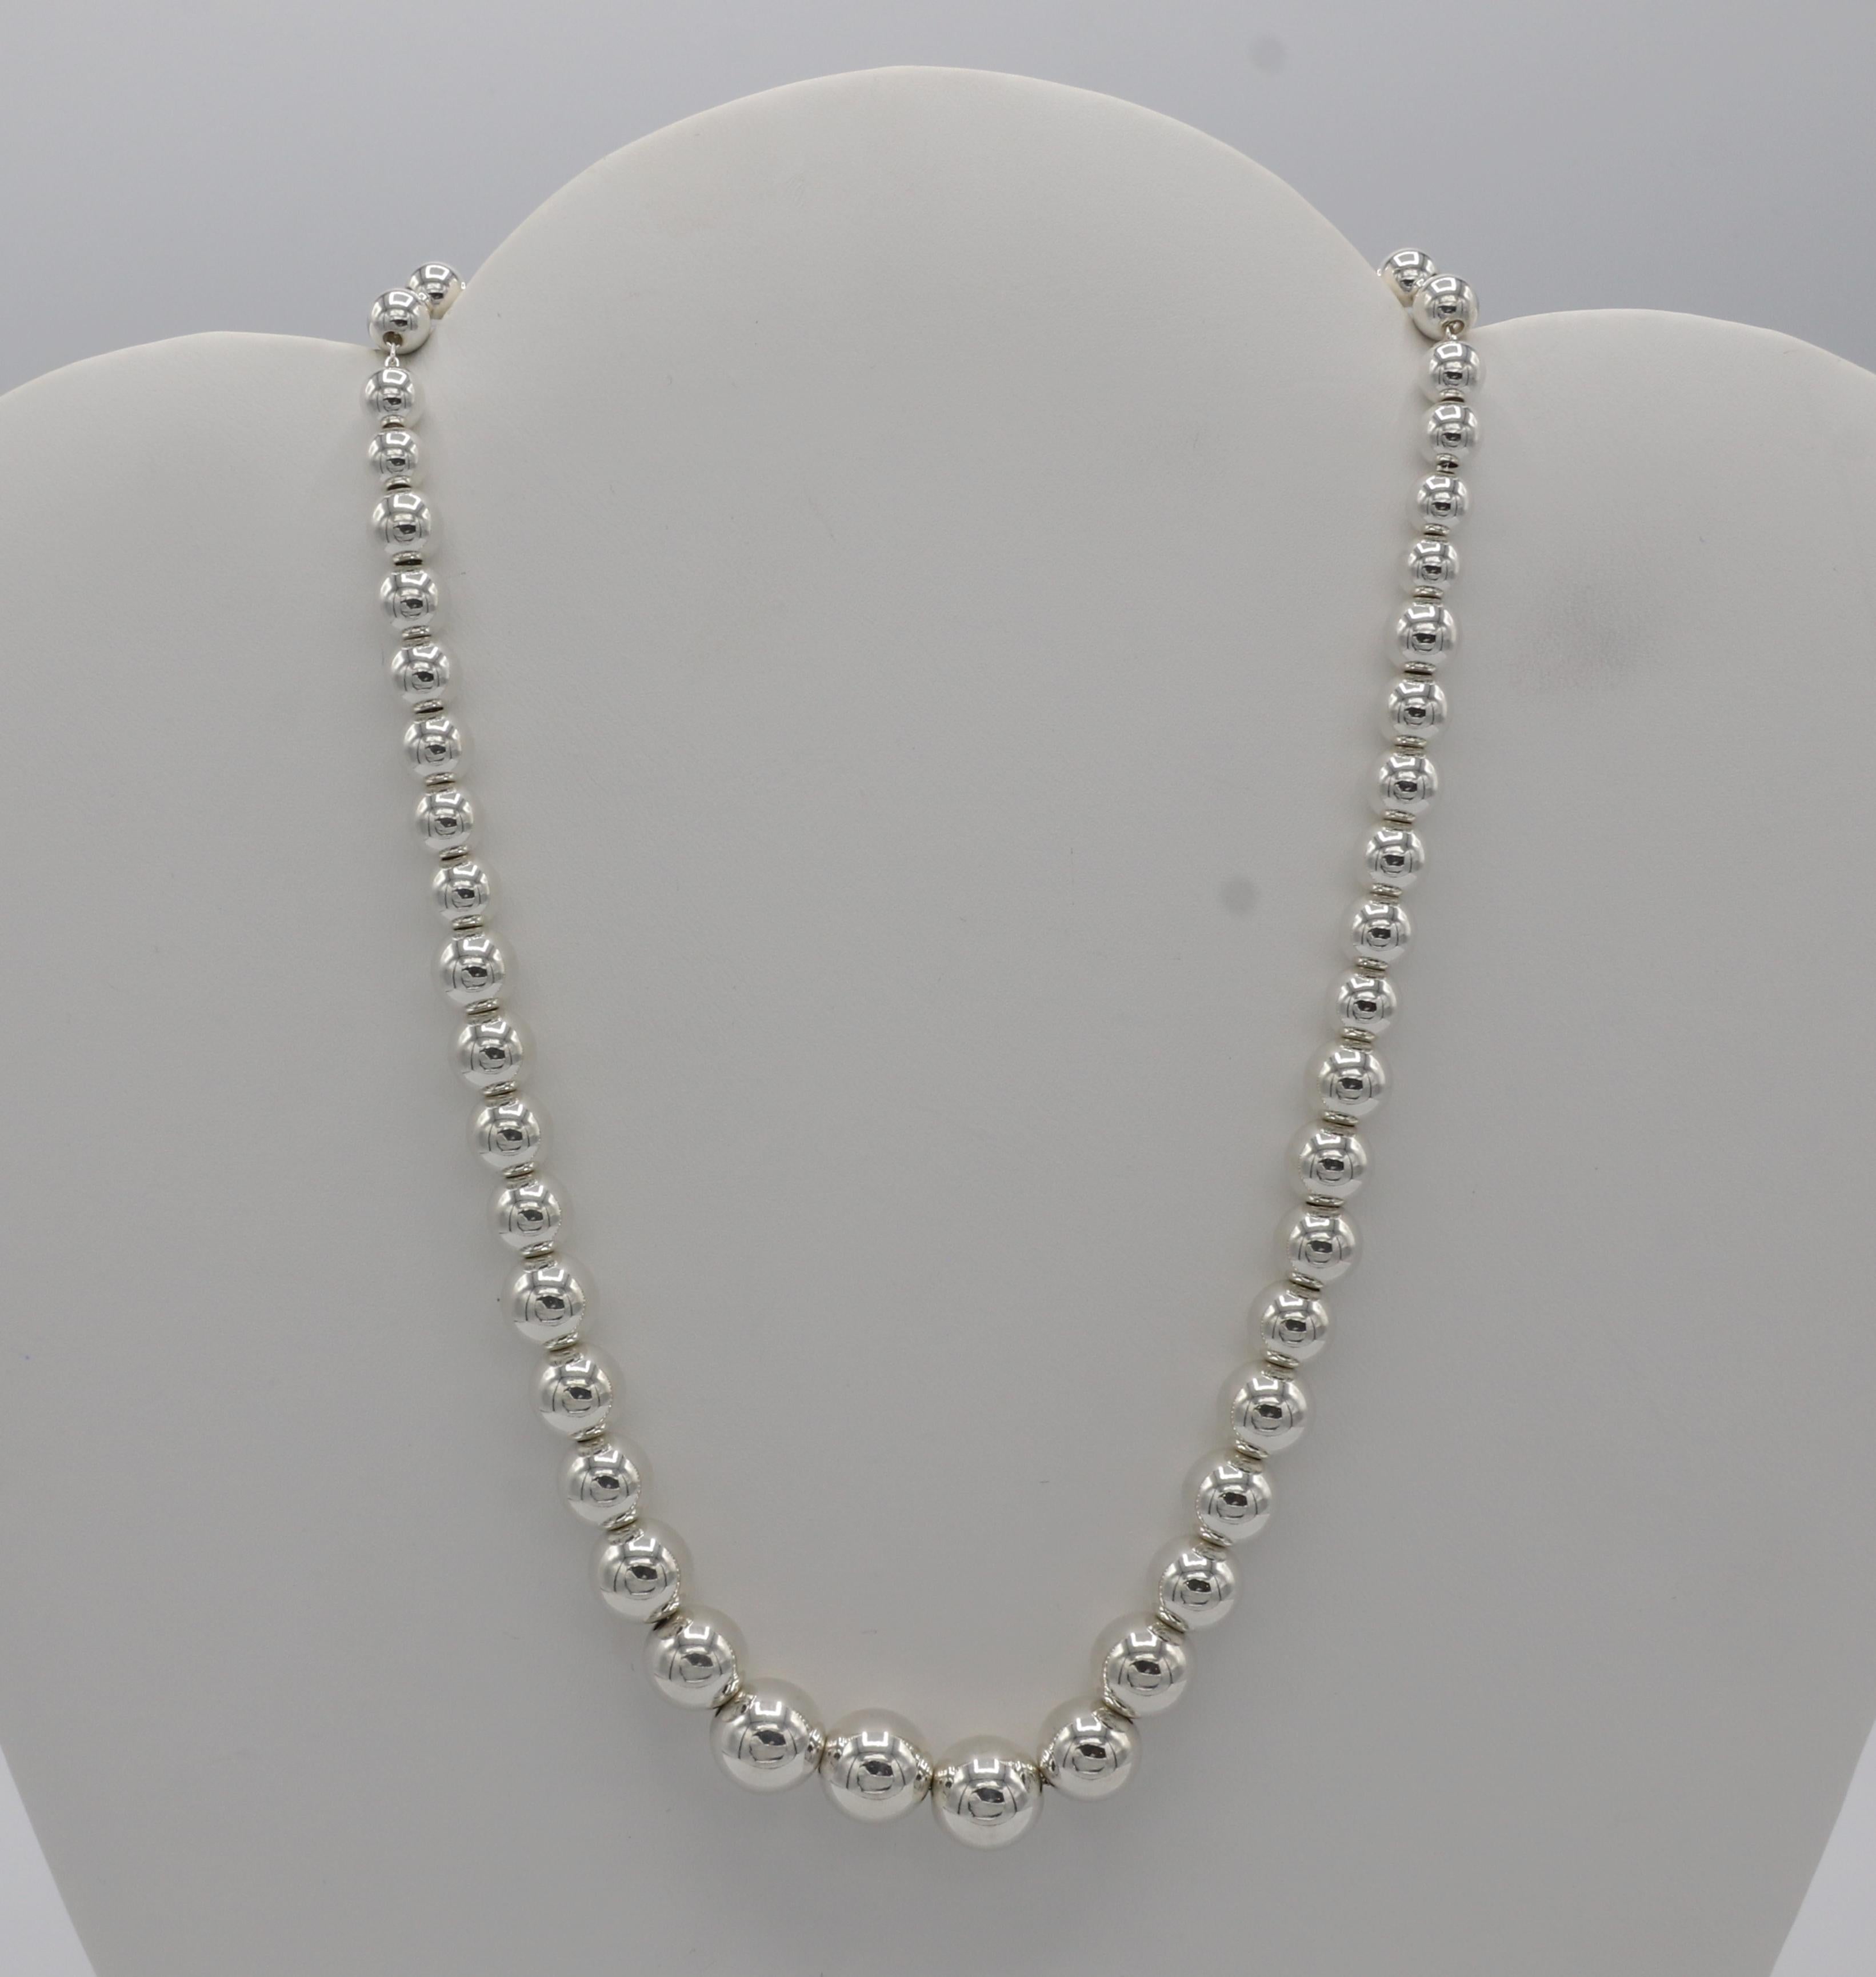 Tiffany & Co. Collier de perles graduées en argent Sterling Hardware Ball and Ball
Métal : Argent sterling
Poids : 27,35 grammes
Longueur : 16 pouces
Largeur : 6 - 11 mm
Prix de détail : 700 USD
